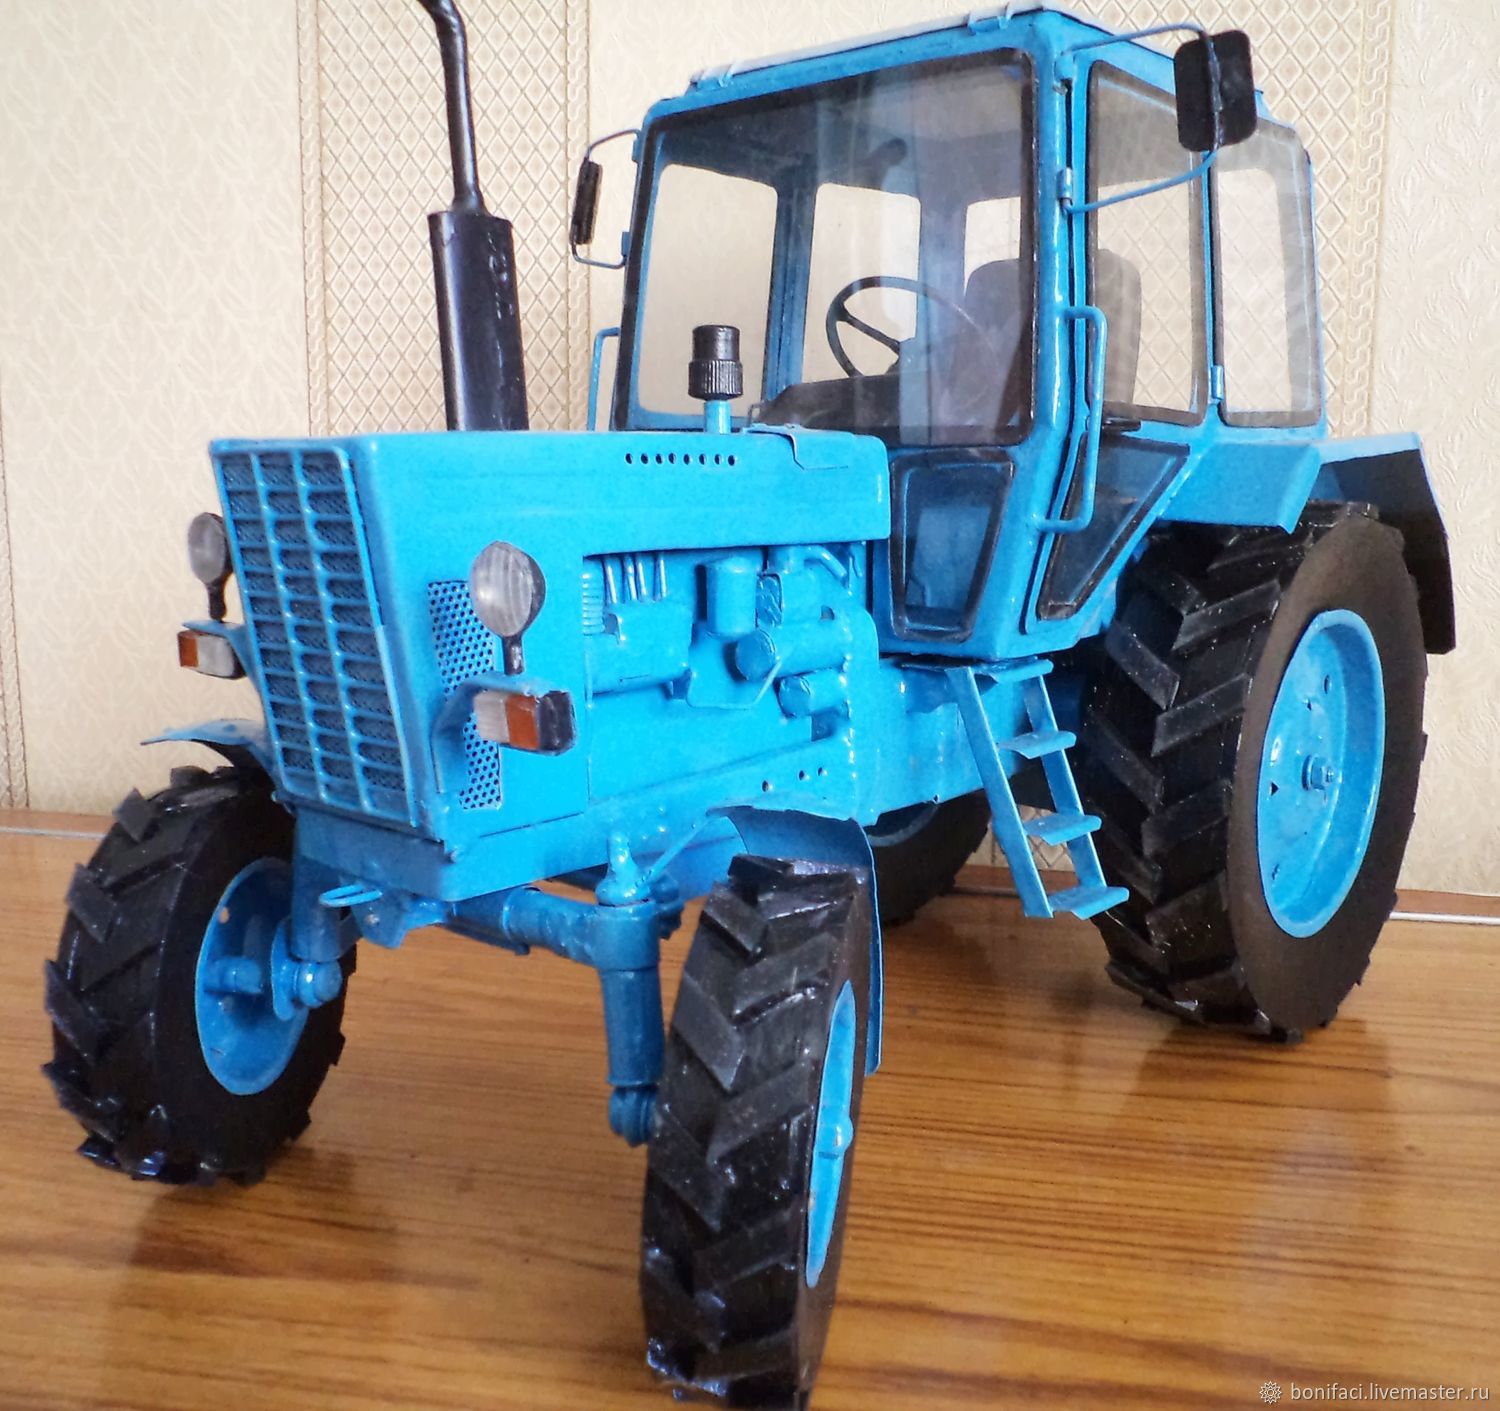 Мтз купить рб. Модель трактора МТЗ-80. Синий трактор МТЗ 80. Трактор синий модель МТЗ 82. Трактор Беларусь модель МТЗ-80.